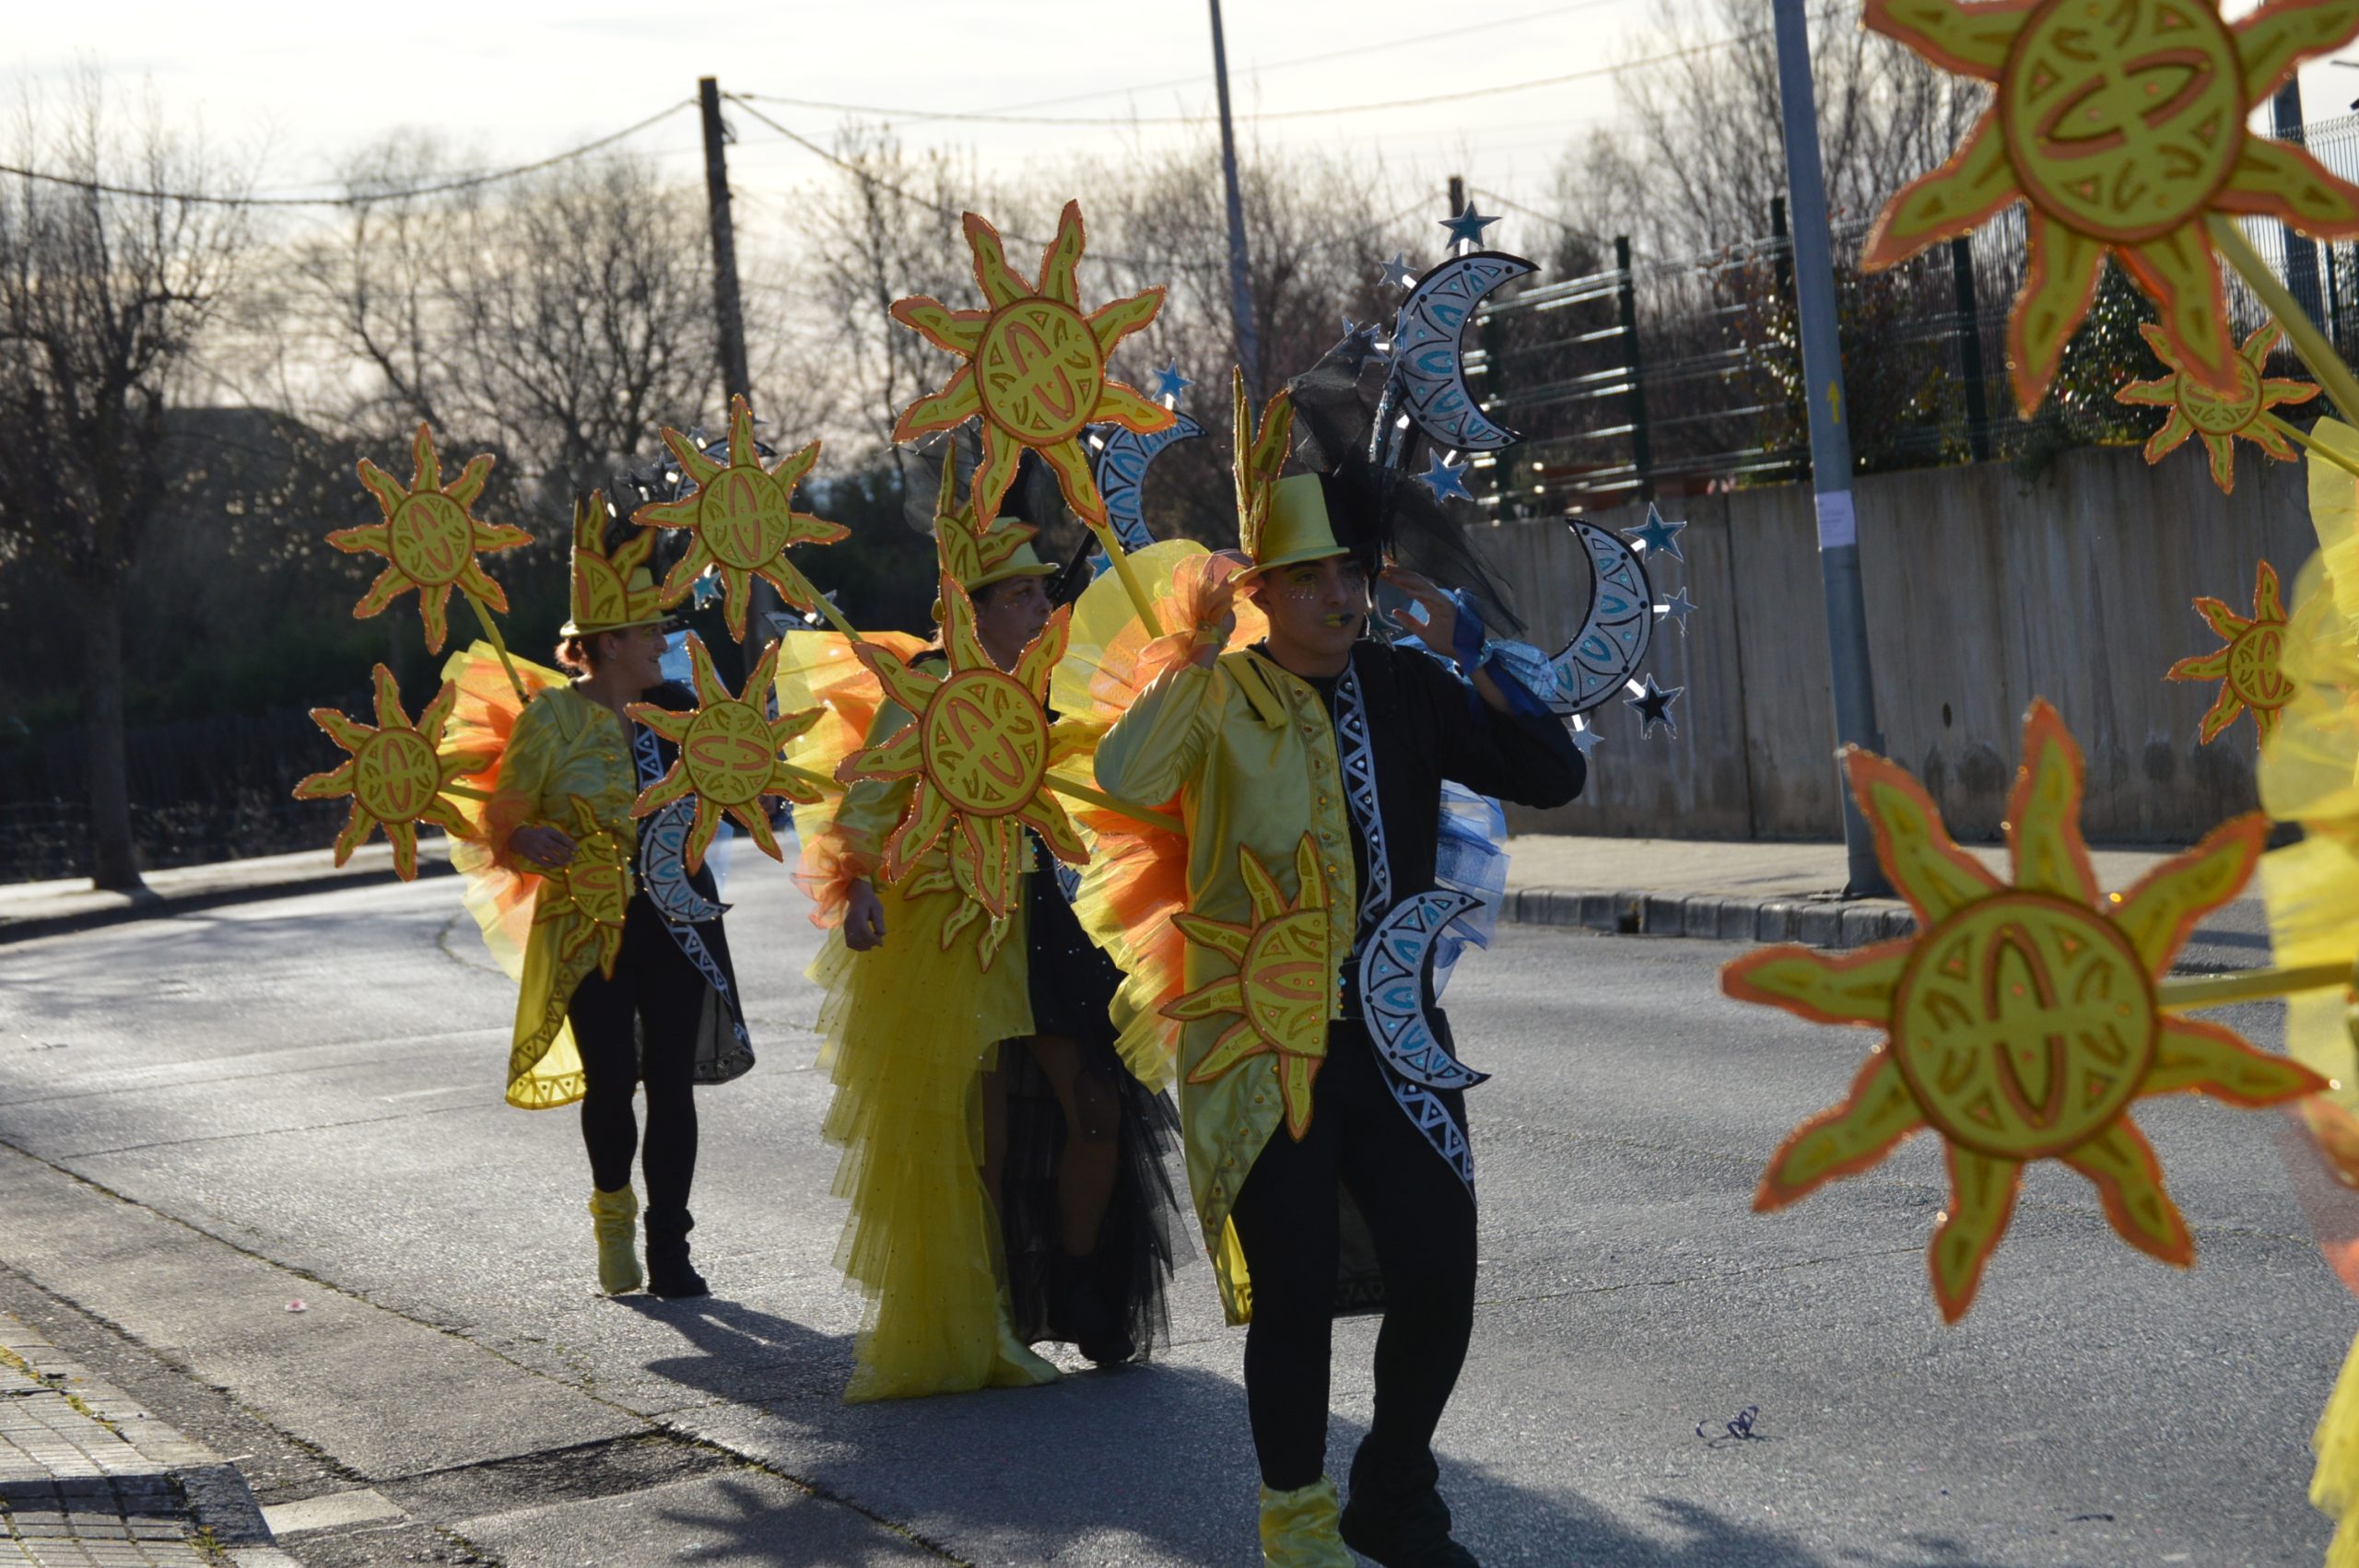 La alegría del Carnaval recorre Cubillos del Sil bajo un sol casi-primaveral 58